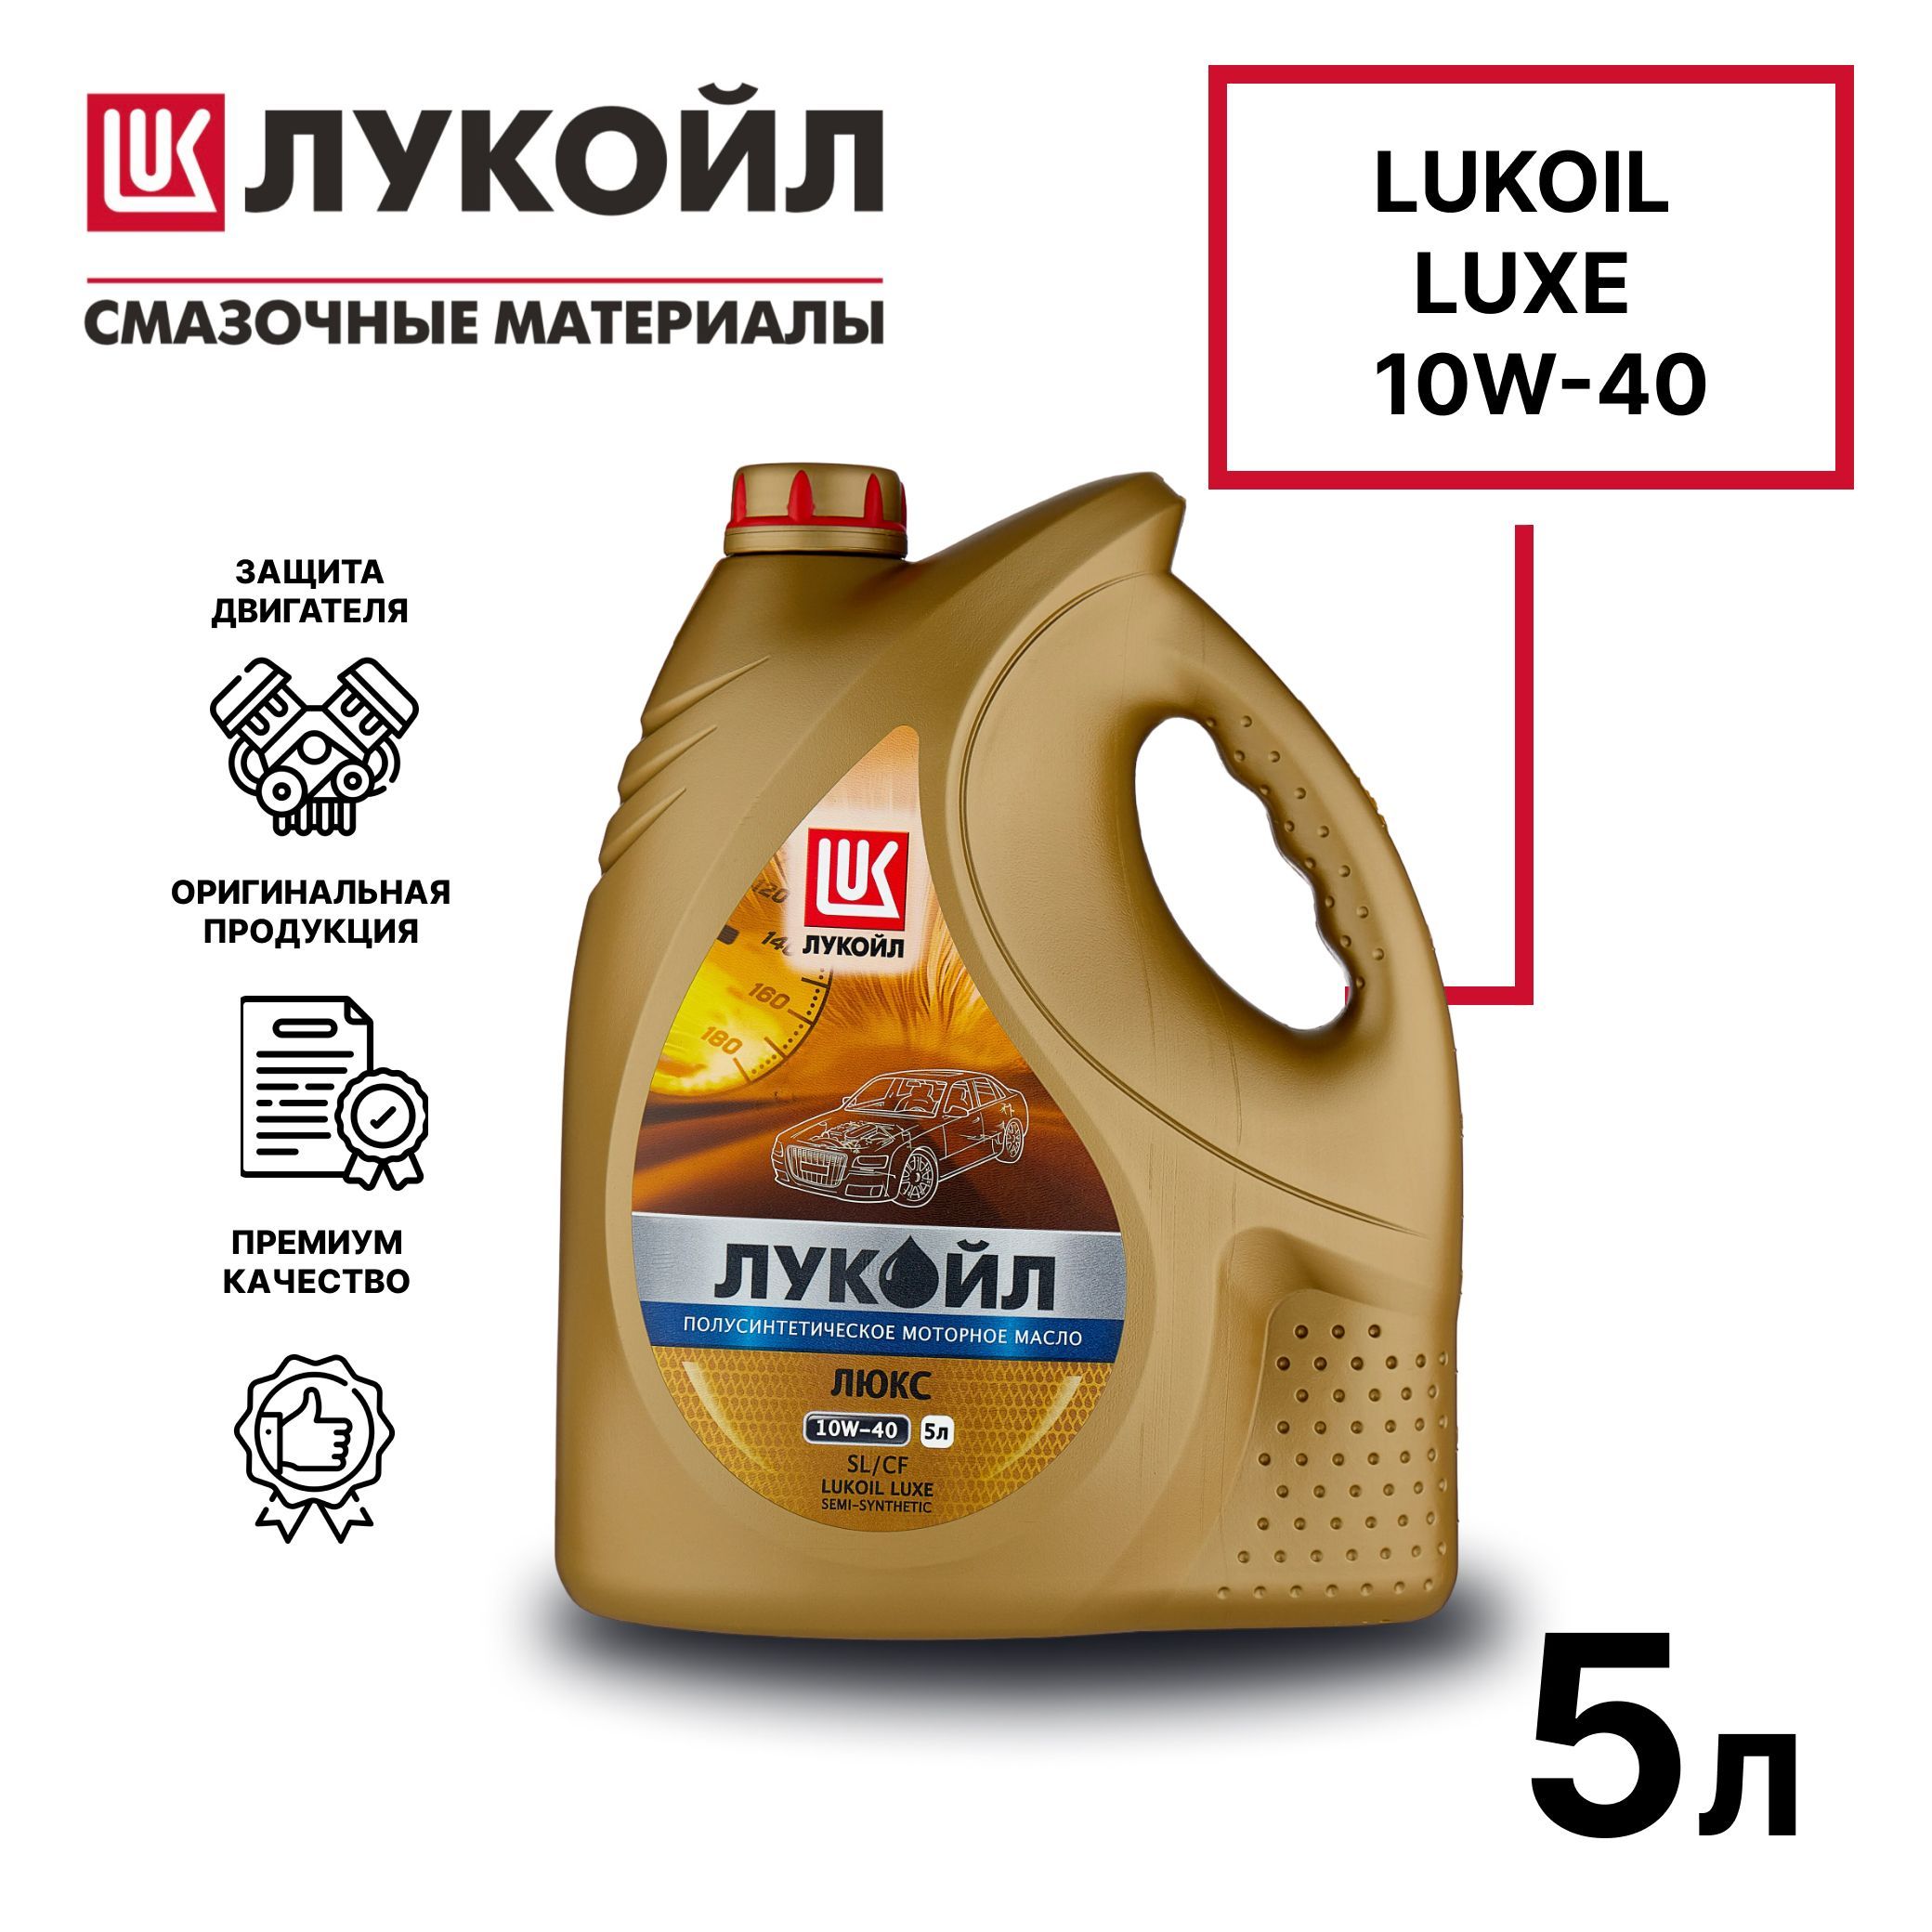 Lukoil Luxe 10w-40. Лукойл Люкс 5 40 SL/CF. Лукойл Люкс 10 w40 ЫД са. Лукоид Люкс 10и40 5л.